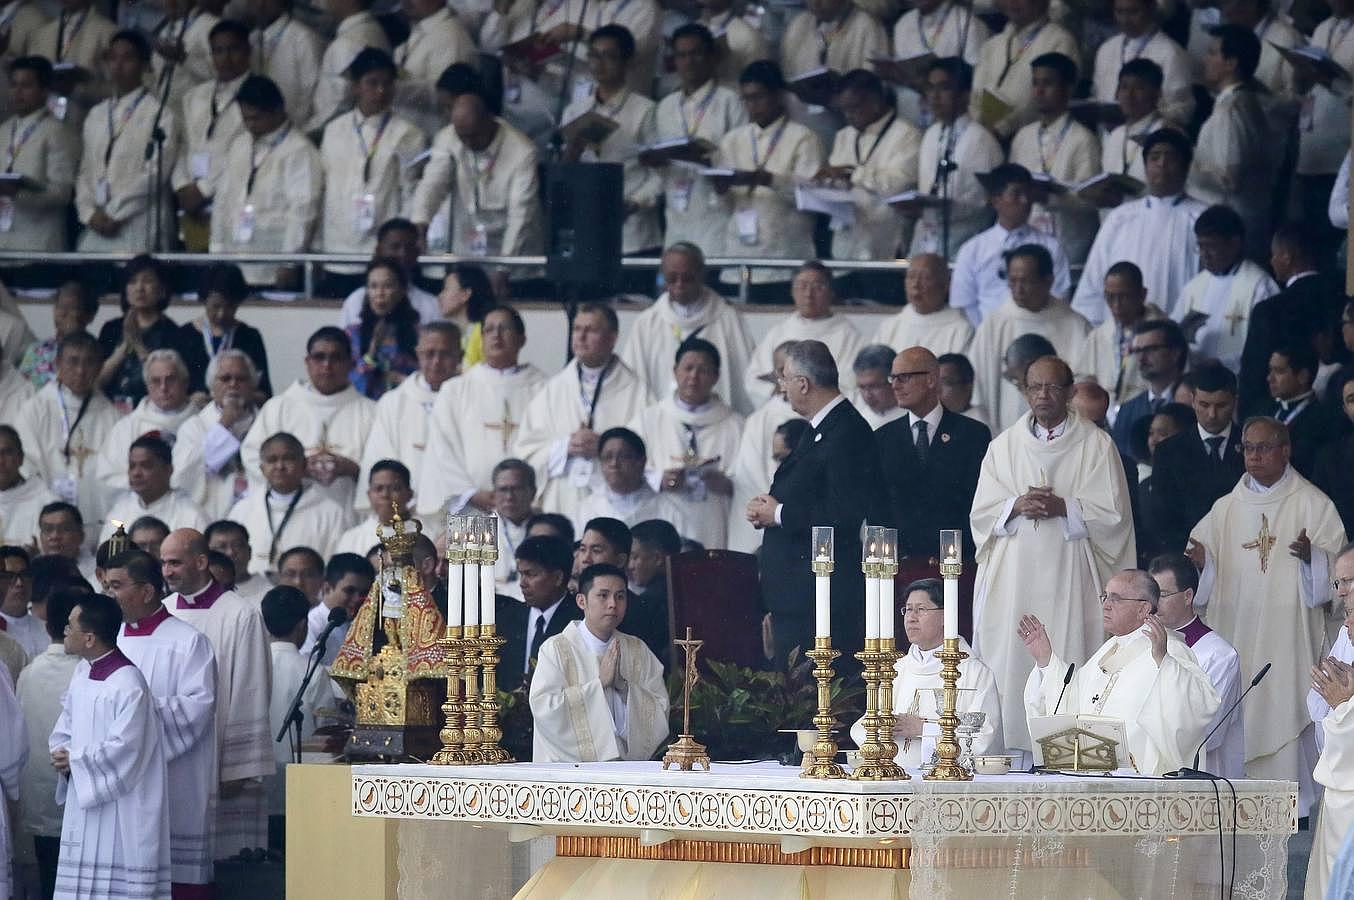 El religioso oficia la misa, la cual ha logrado congregar -según las fuentes de la Iglesia- a entre seis y siete millones de personas